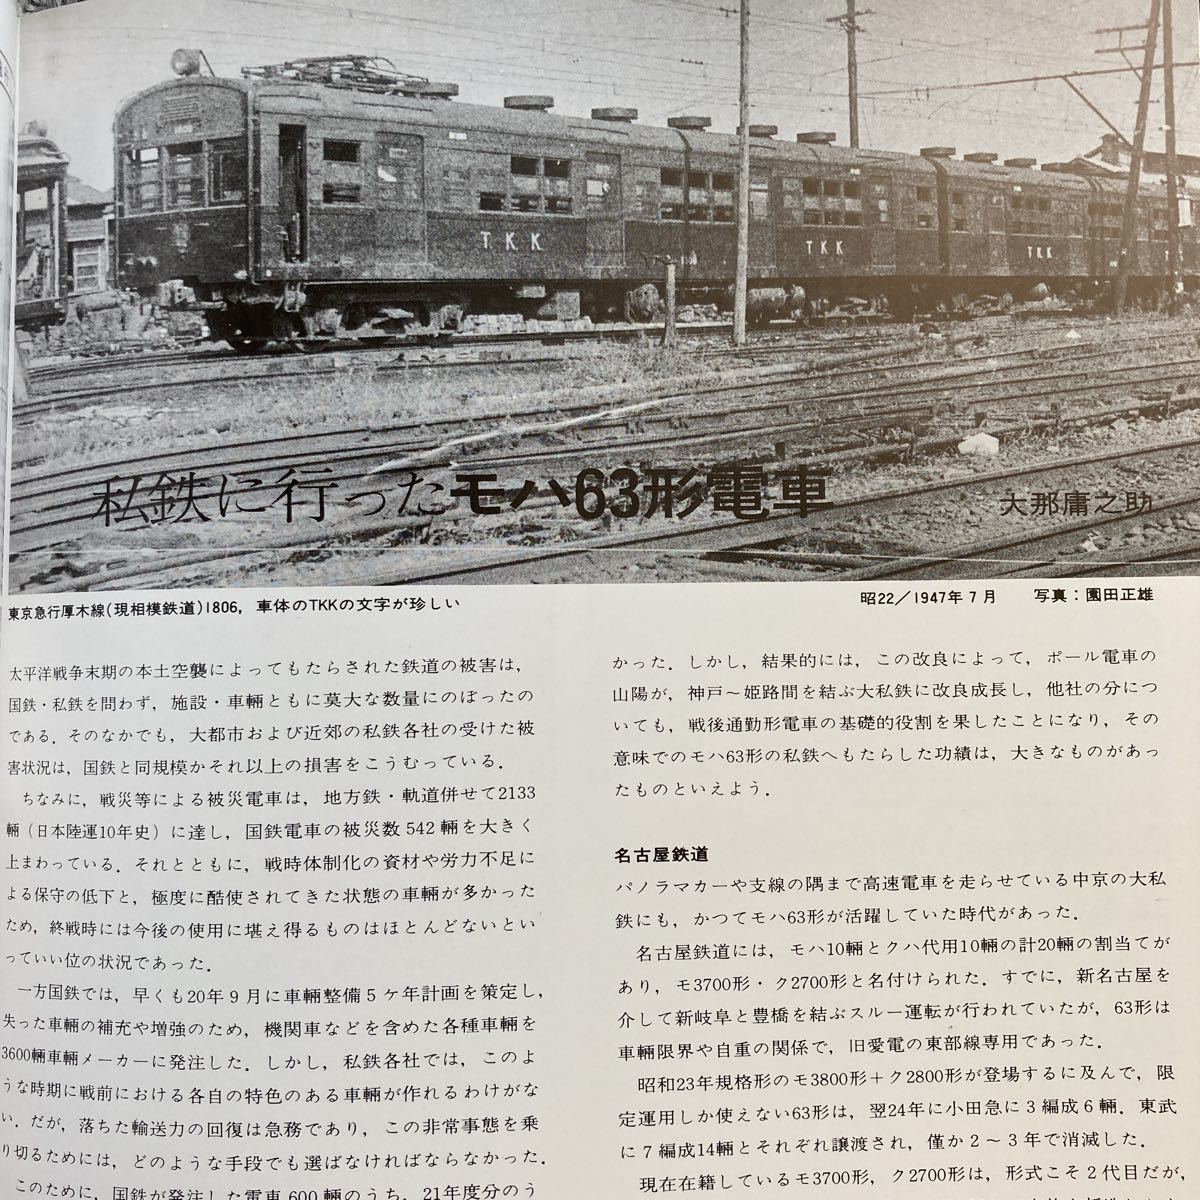 とれいん増刊 レイル 1980 WINTER プレス・アイゼンバーン 国電63系 私鉄に行った63形電車 新幹線を走った阪急 北陸の私鉄 越後の6250